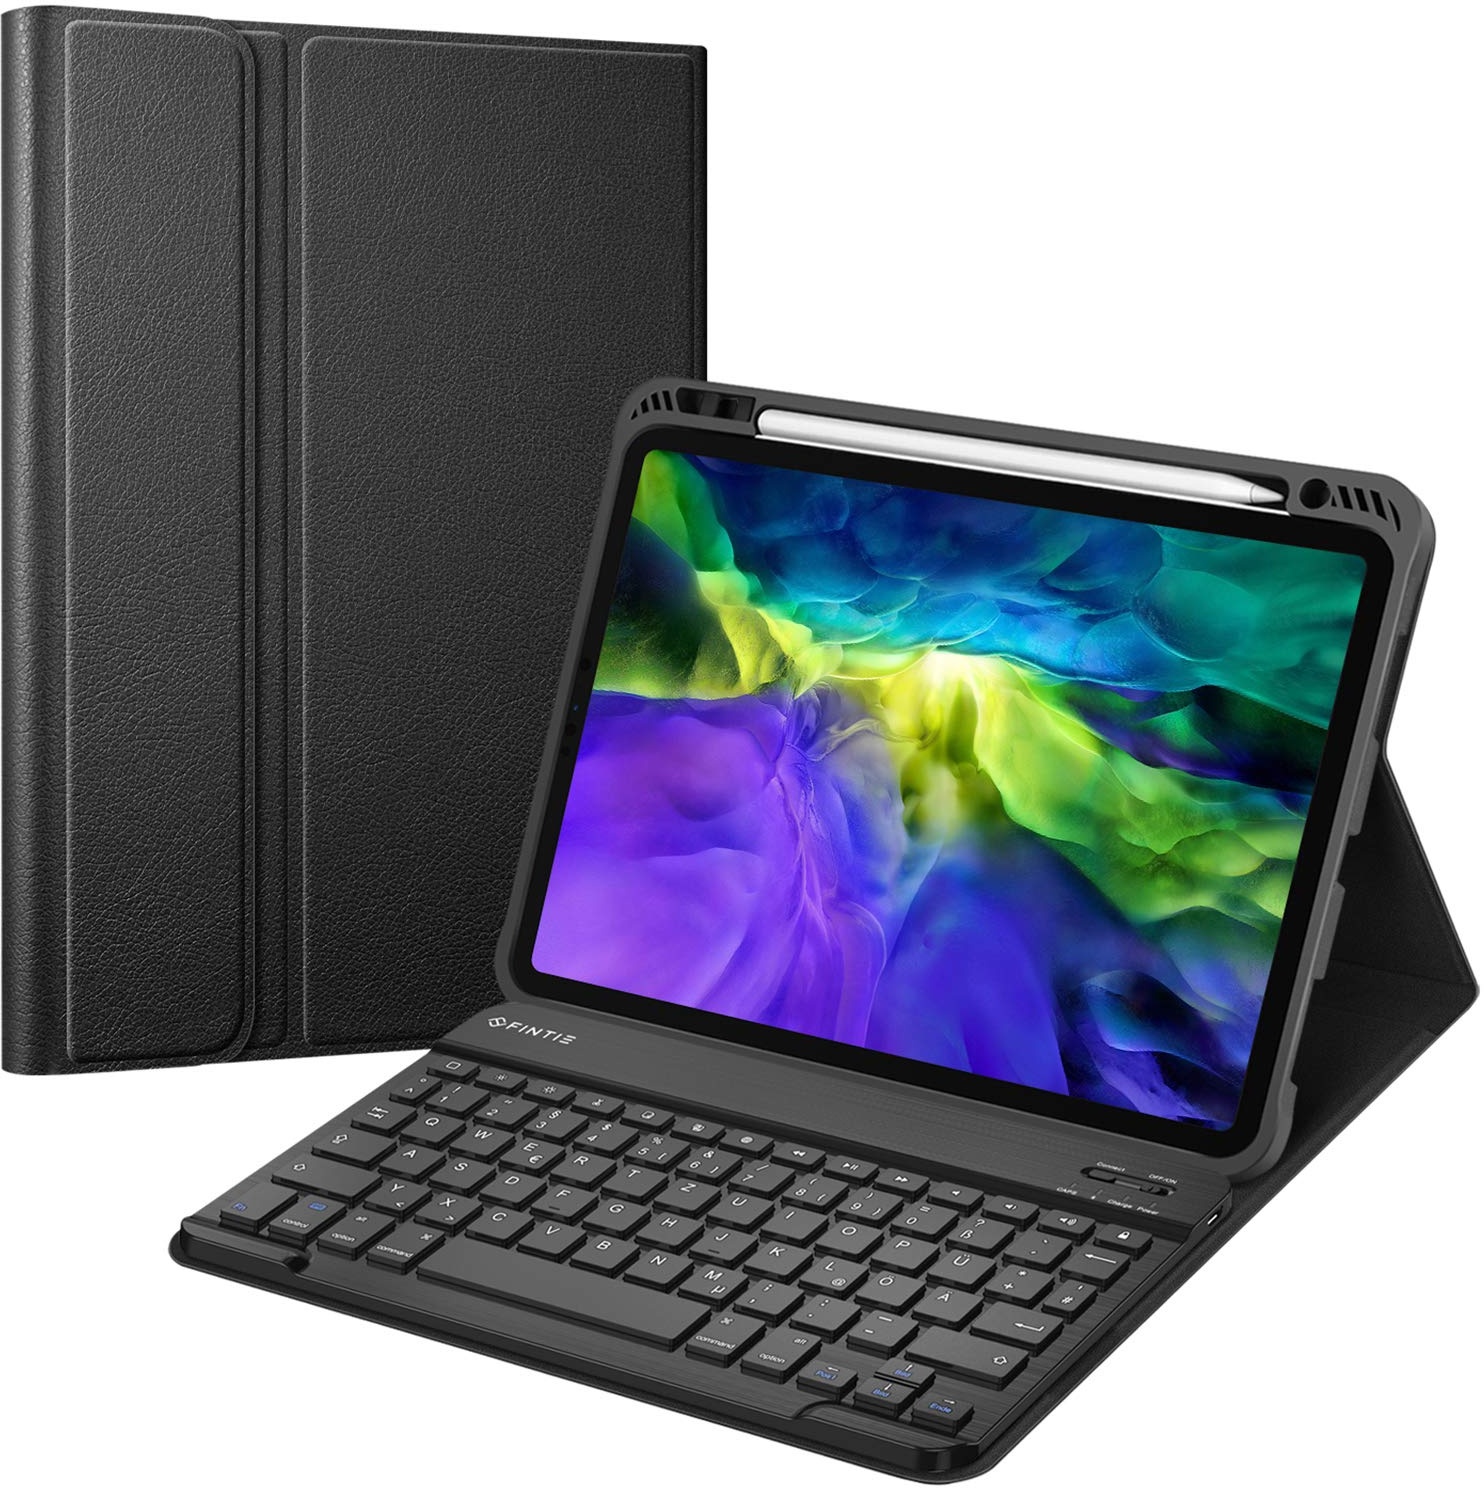 Fintie Tastatur Hülle für iPad Pro 11 Zoll 2020 & 2018, Soft TPU Rückseite Gehäuse Schutzhülle mit Pencil Halter, magnetisch Abnehmbarer Bluetooth Tastatur mit QWERTZ Layout, Schwarz